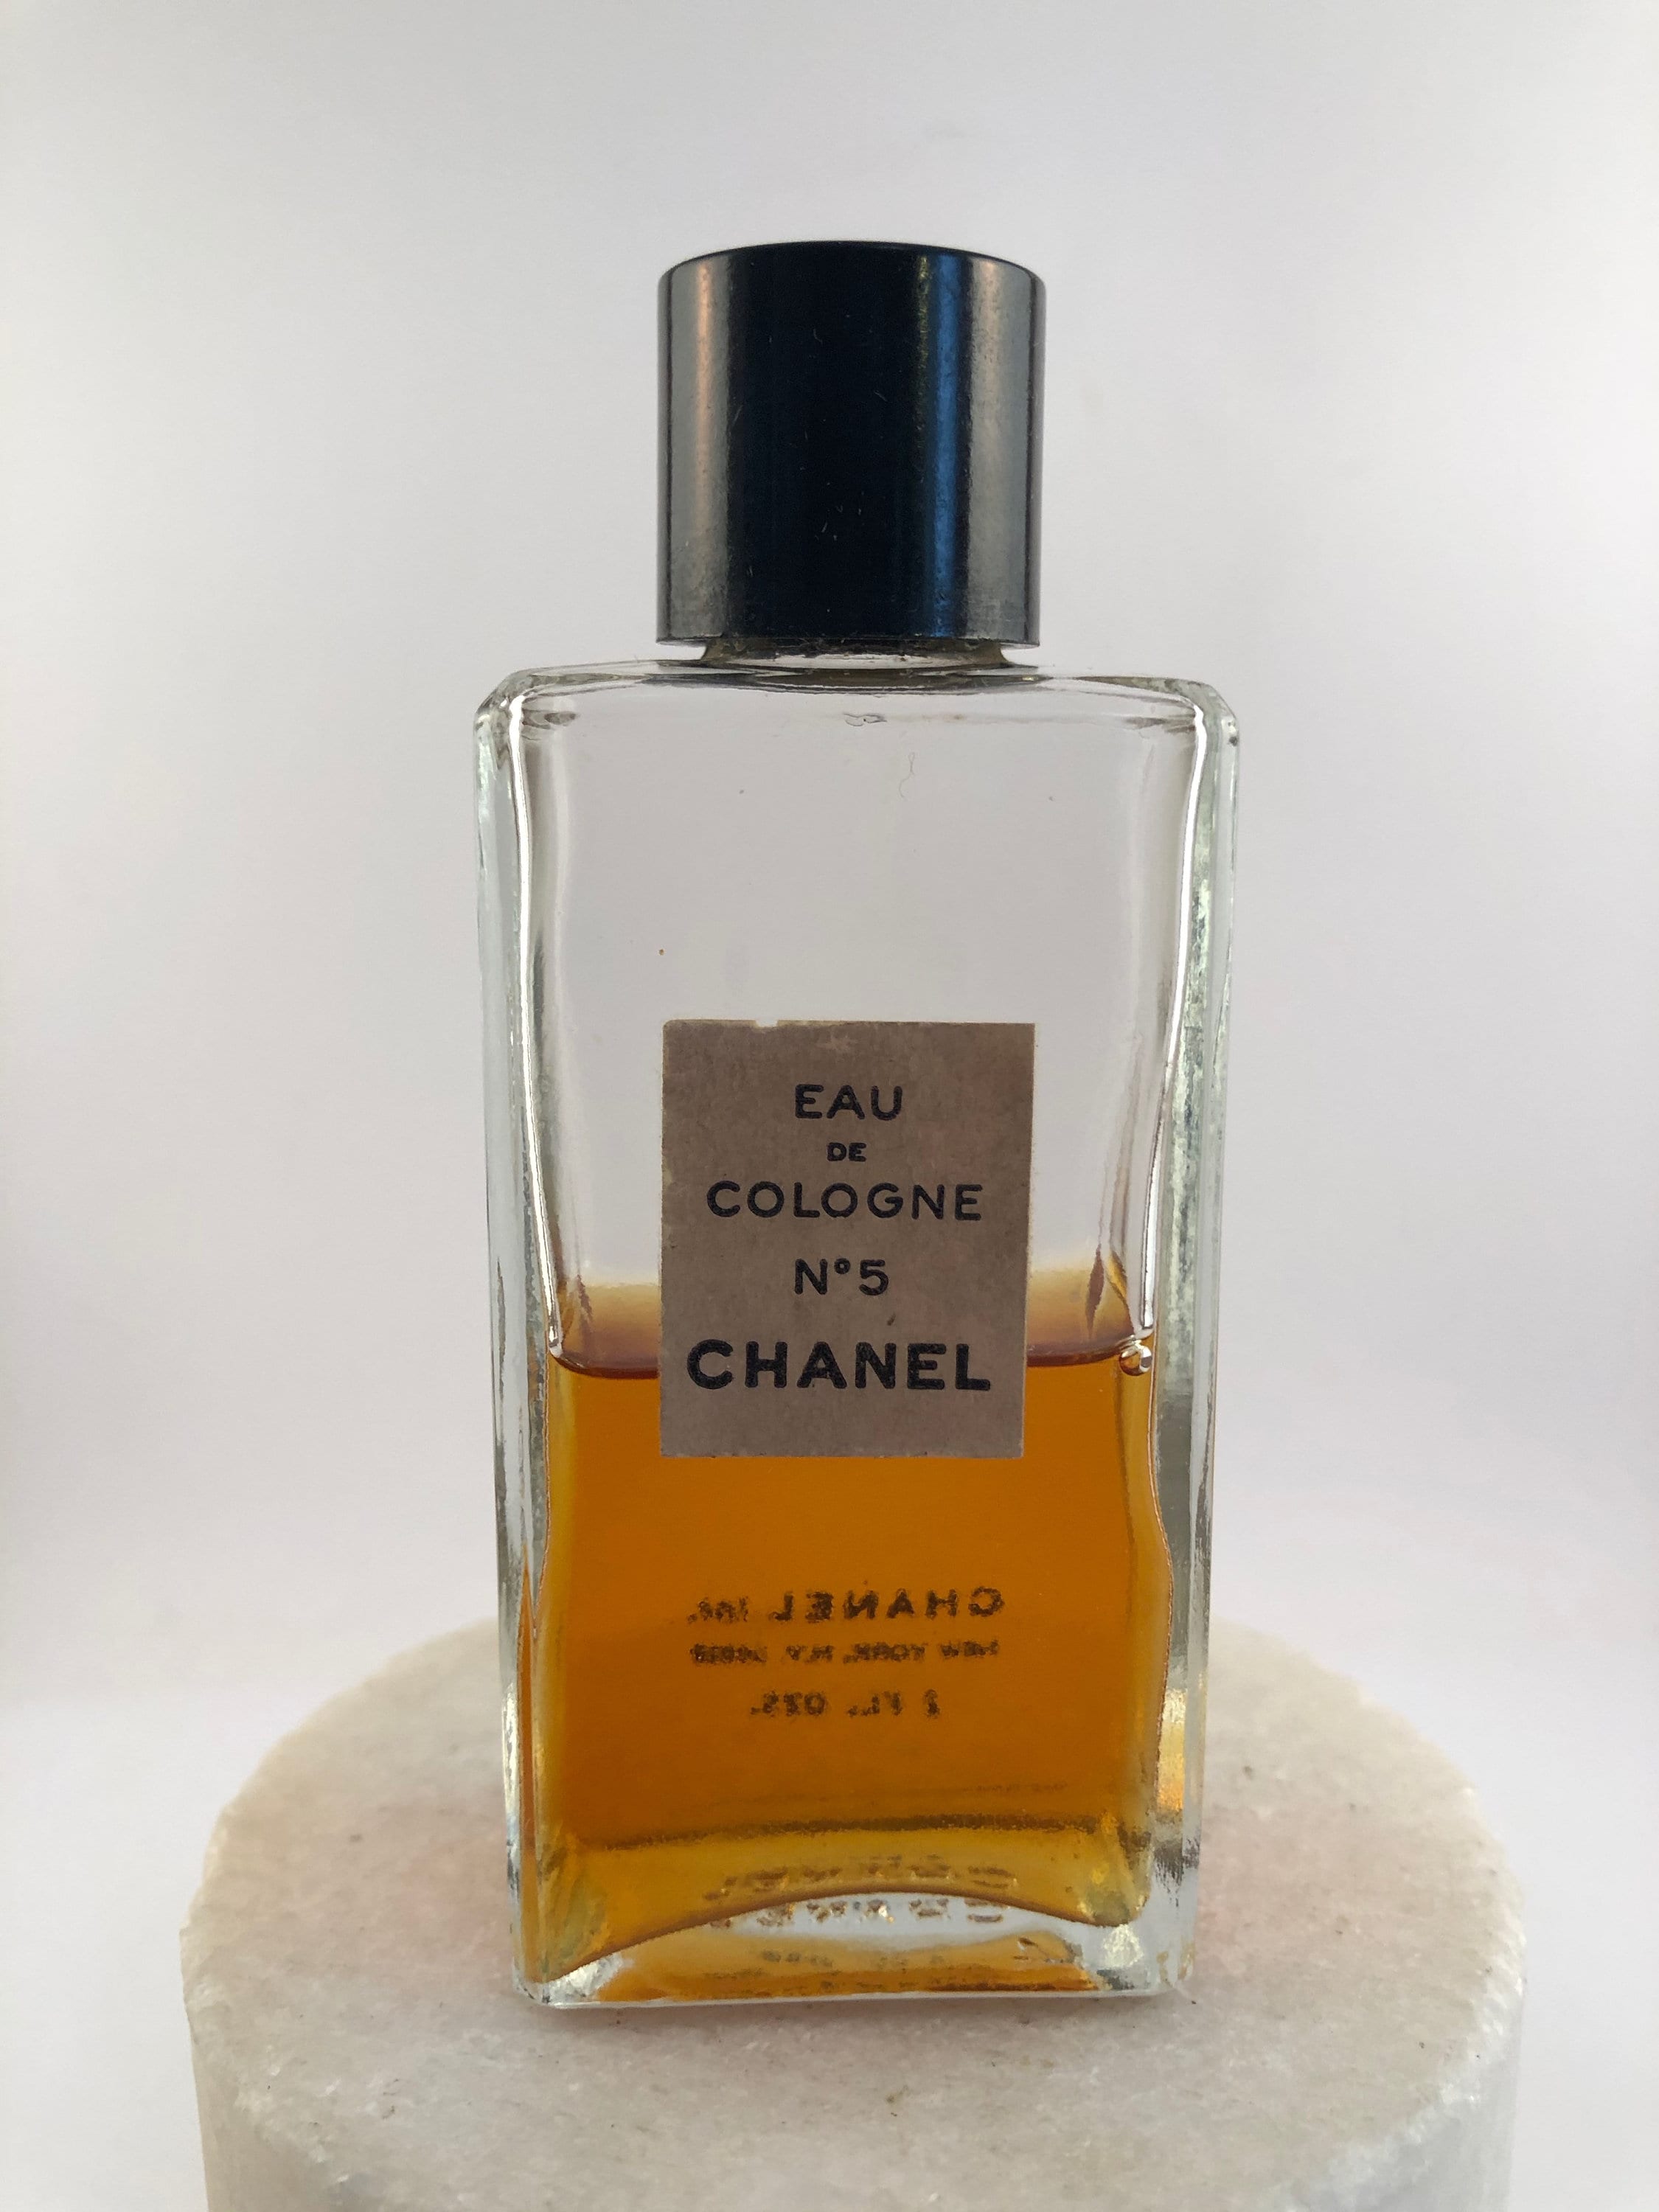 Houbigant Perfumes: Chantilly by Houbigant/Dana c1940